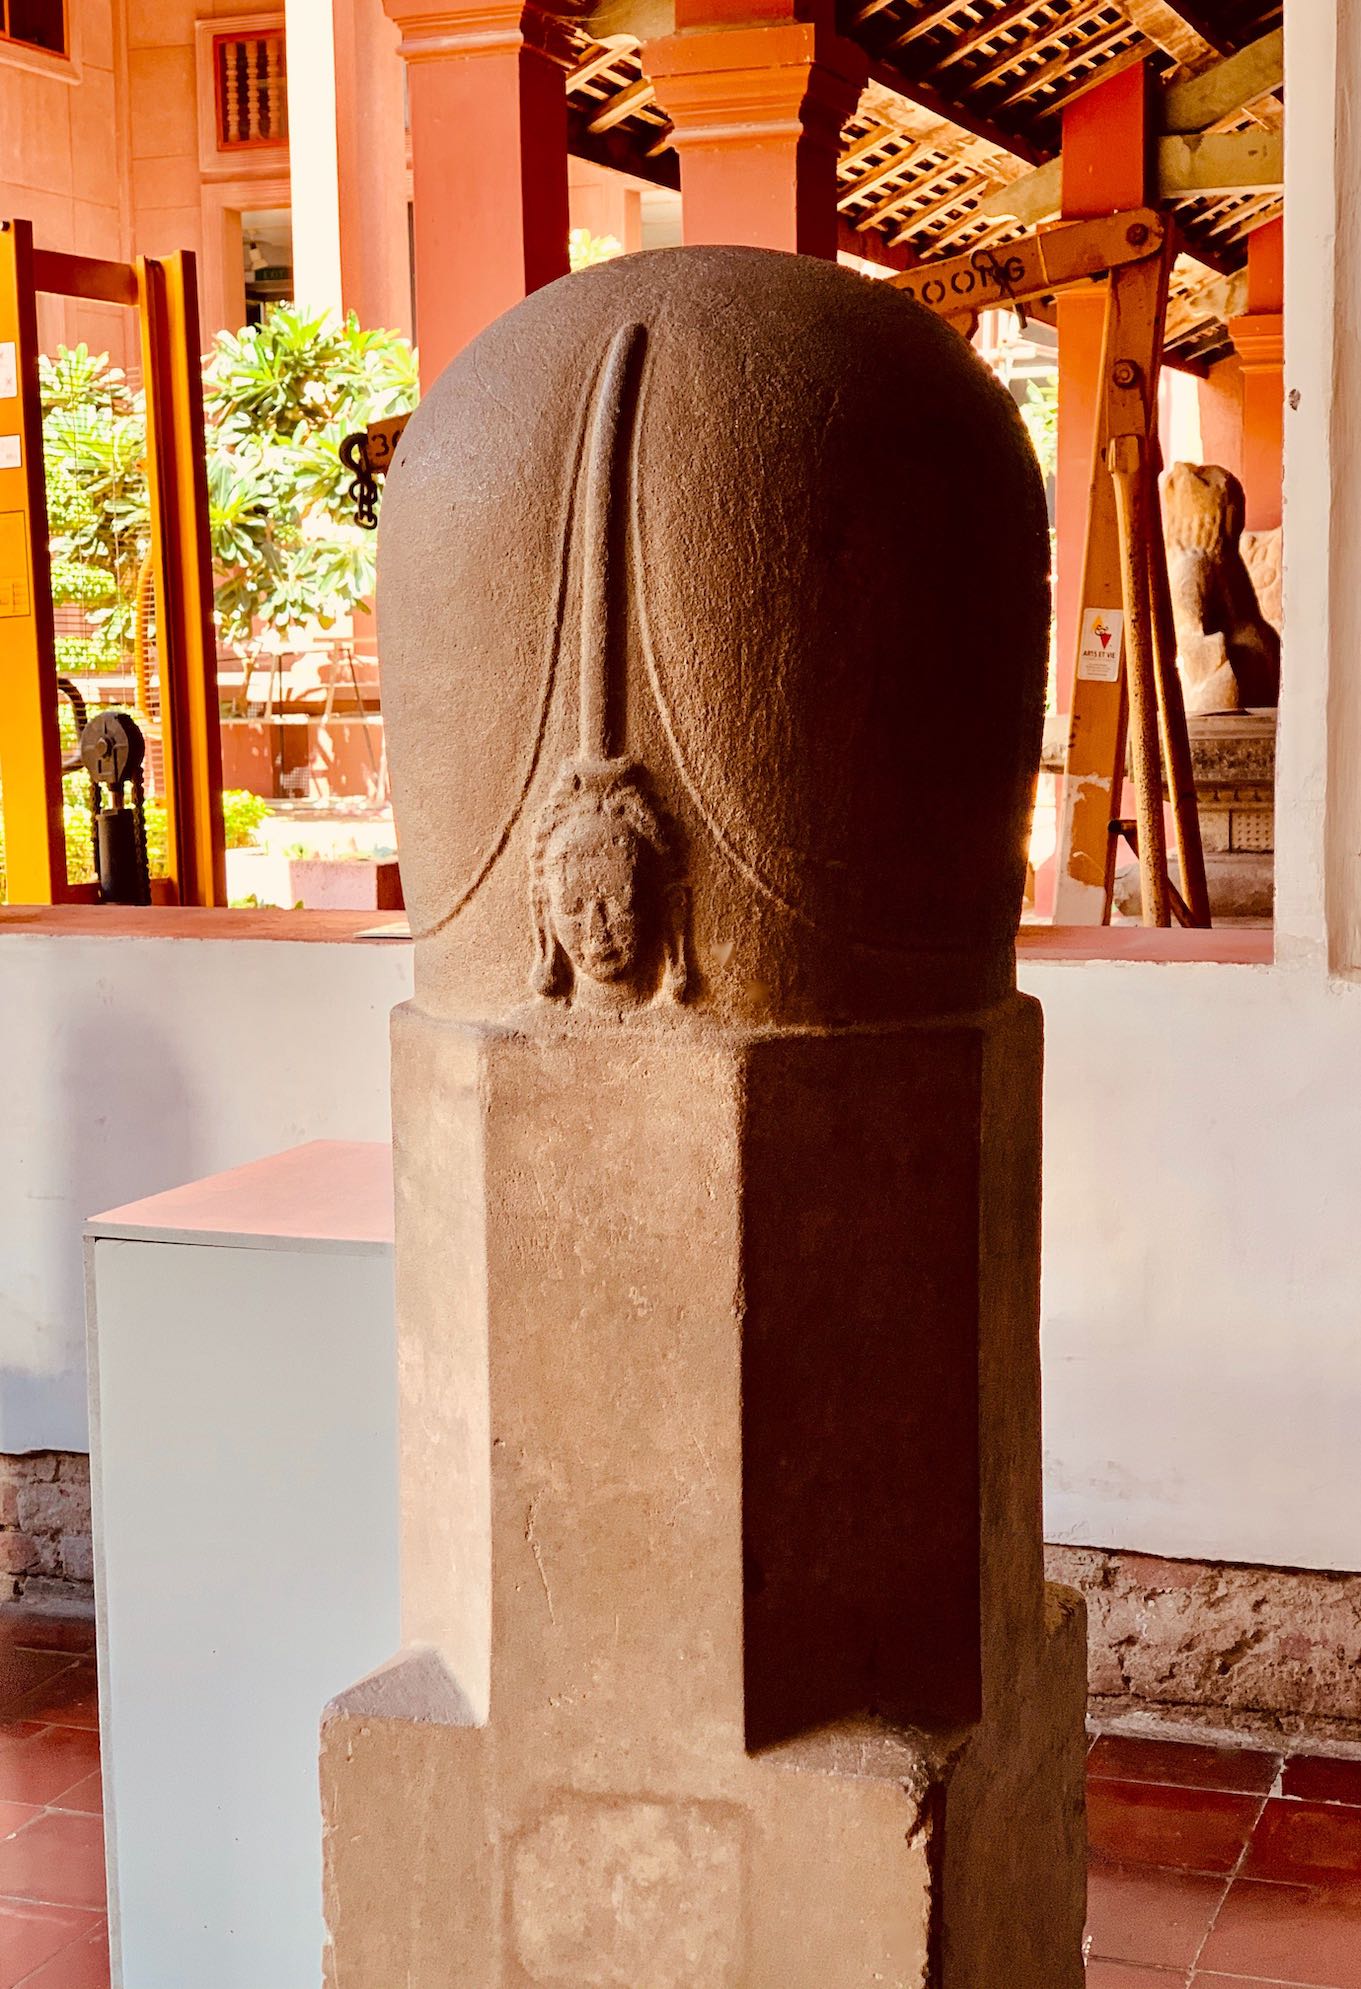 7th century Mukhalinga National Museum of Cambodia